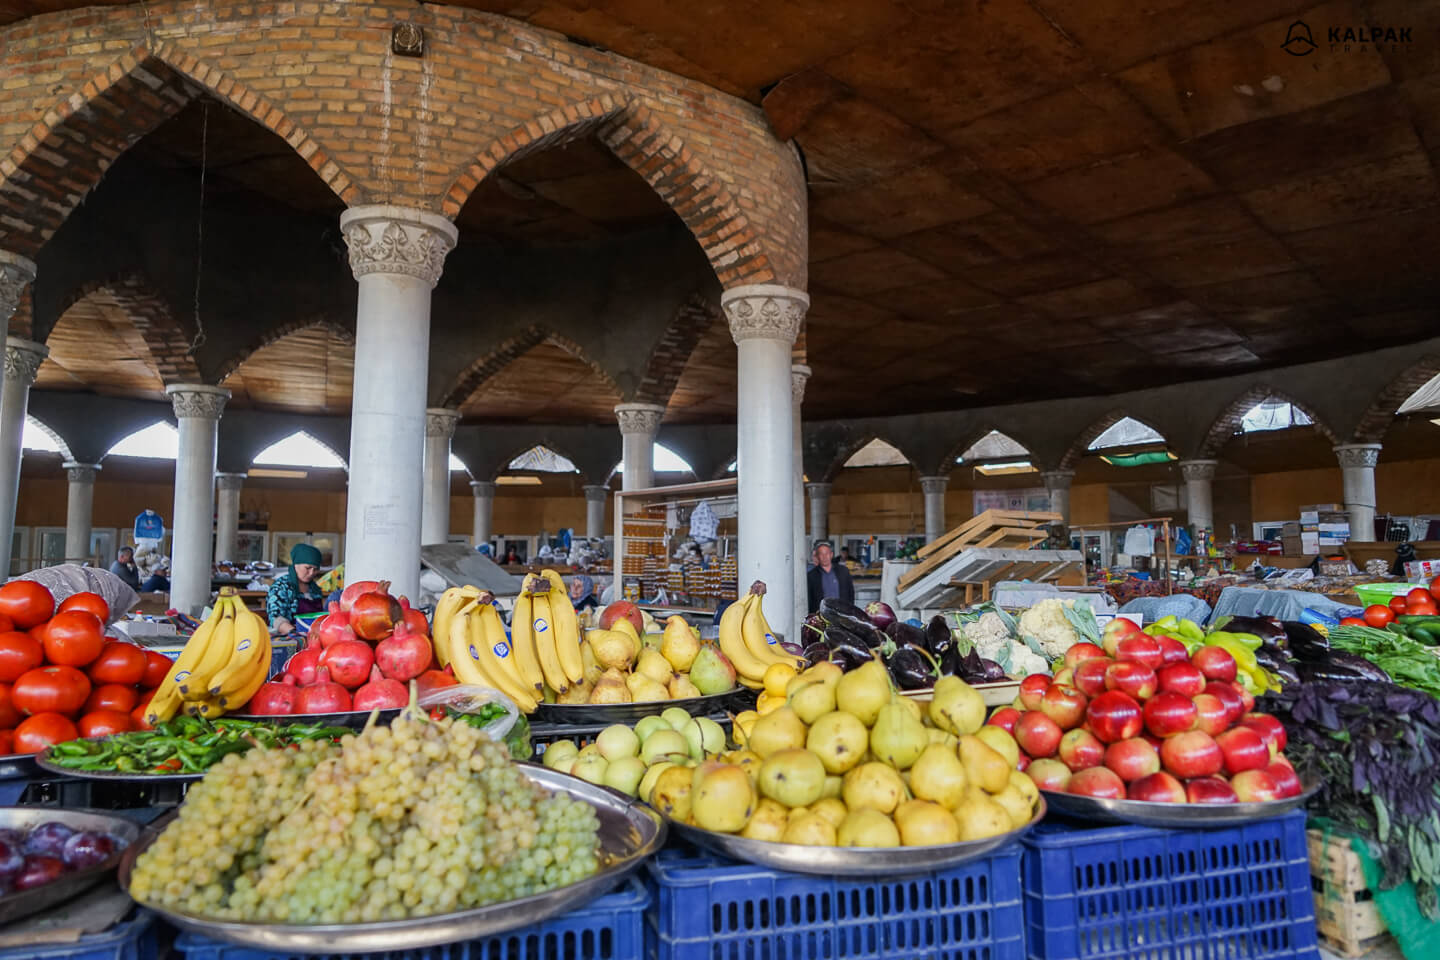 Penjikent market with fruits & fresh produce